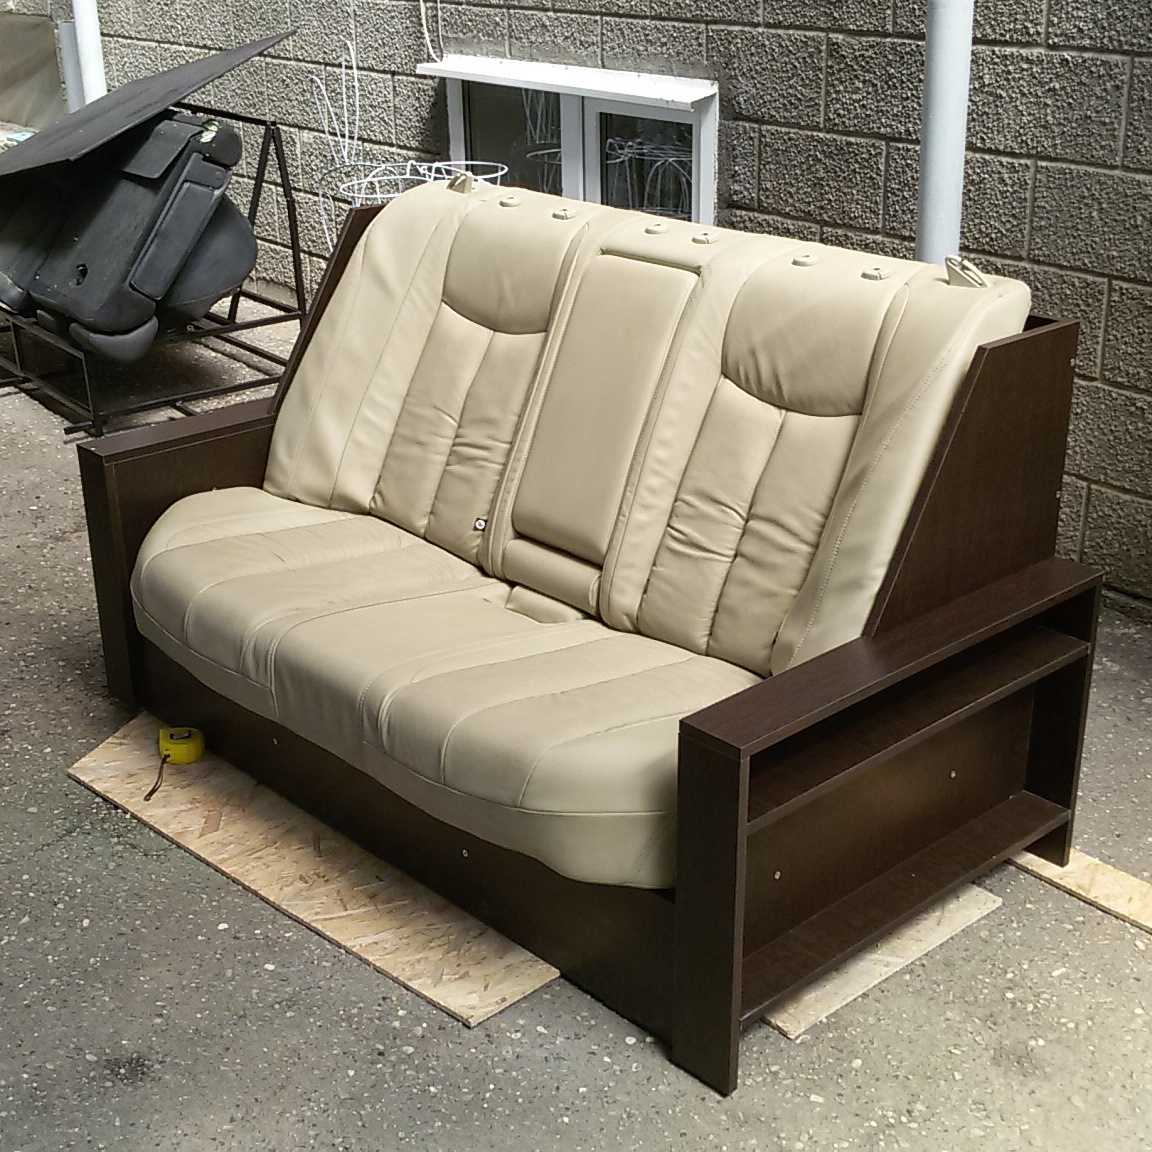 Где можно поставить диван из багажника авто 🦈 avtoshark.com